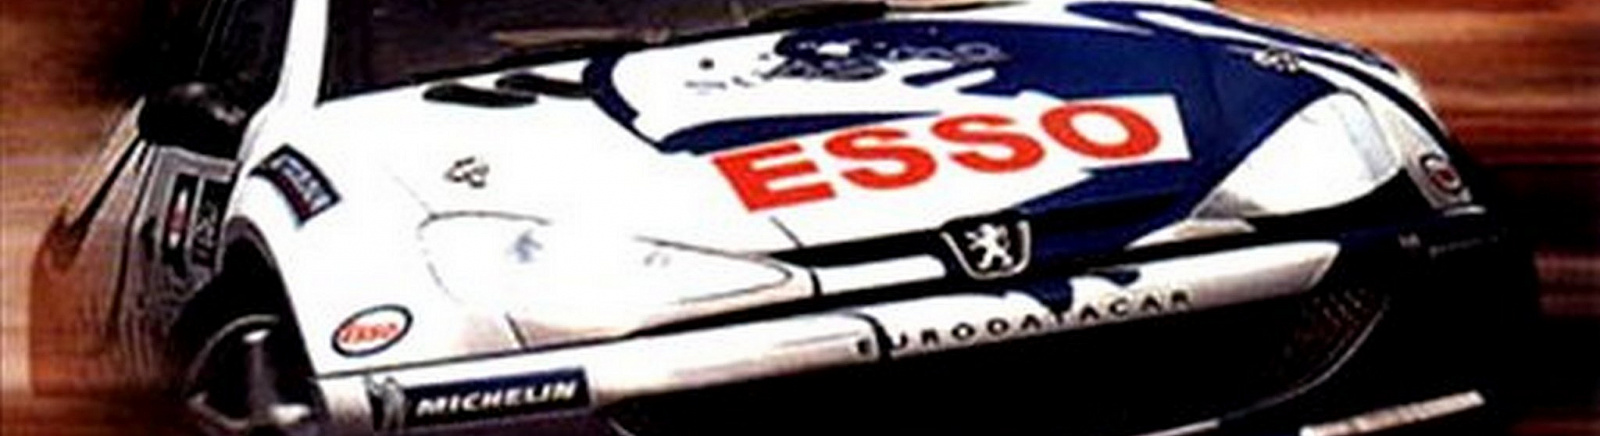 Дата выхода Need for Speed: V-Rally 2  на PC, PlayStation и Dreamcast в России и во всем мире